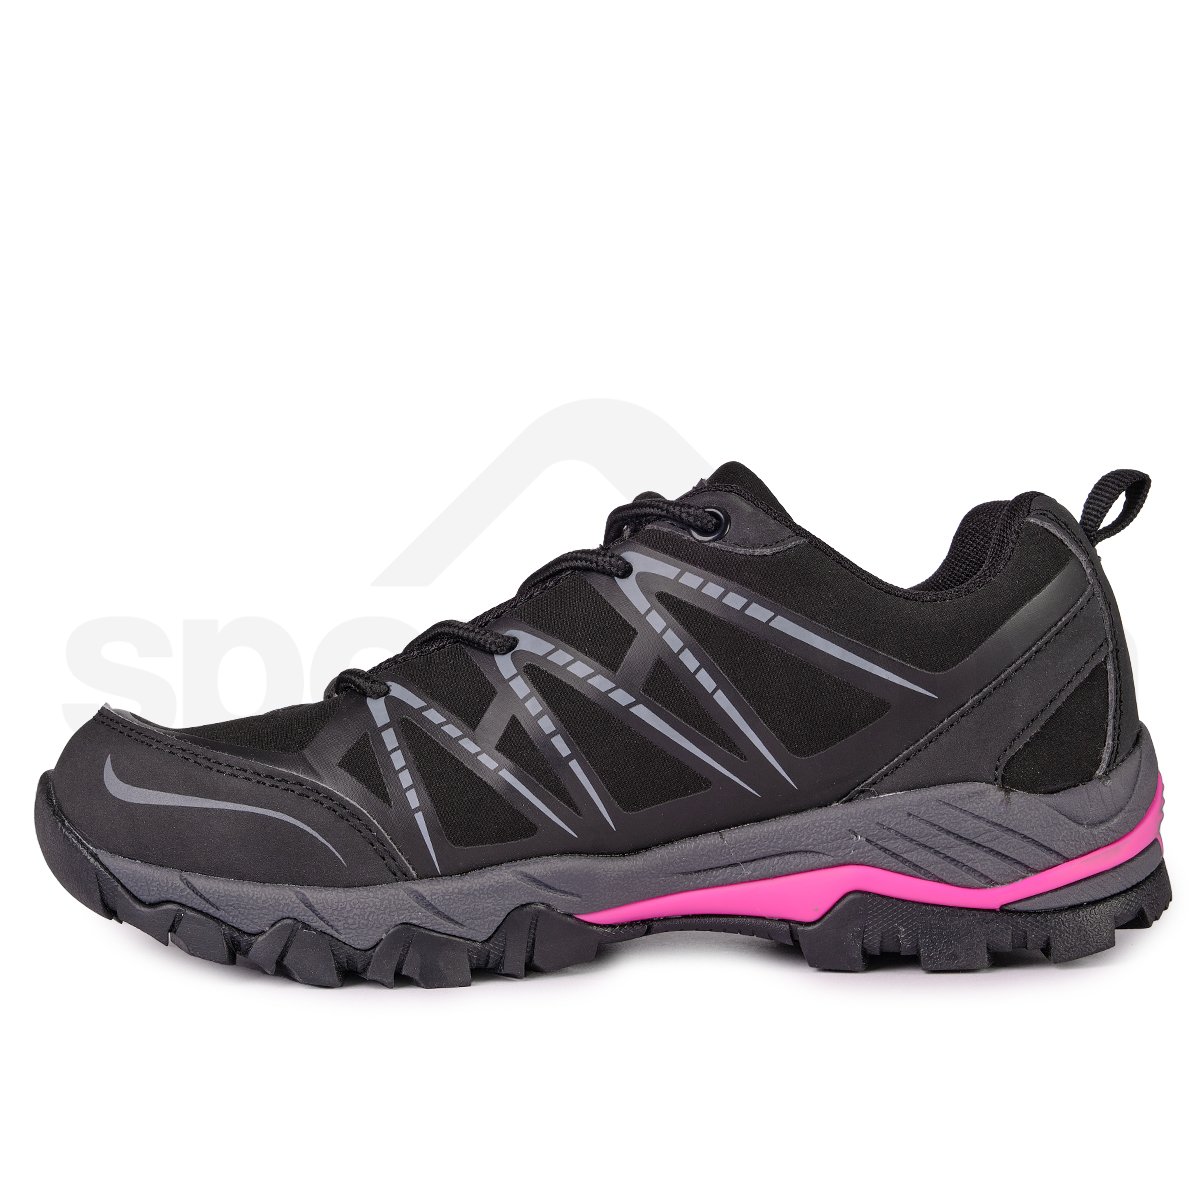 Dámské outdoorové boty Loap Erskine HSL18174d 130162 W - černá/růžová